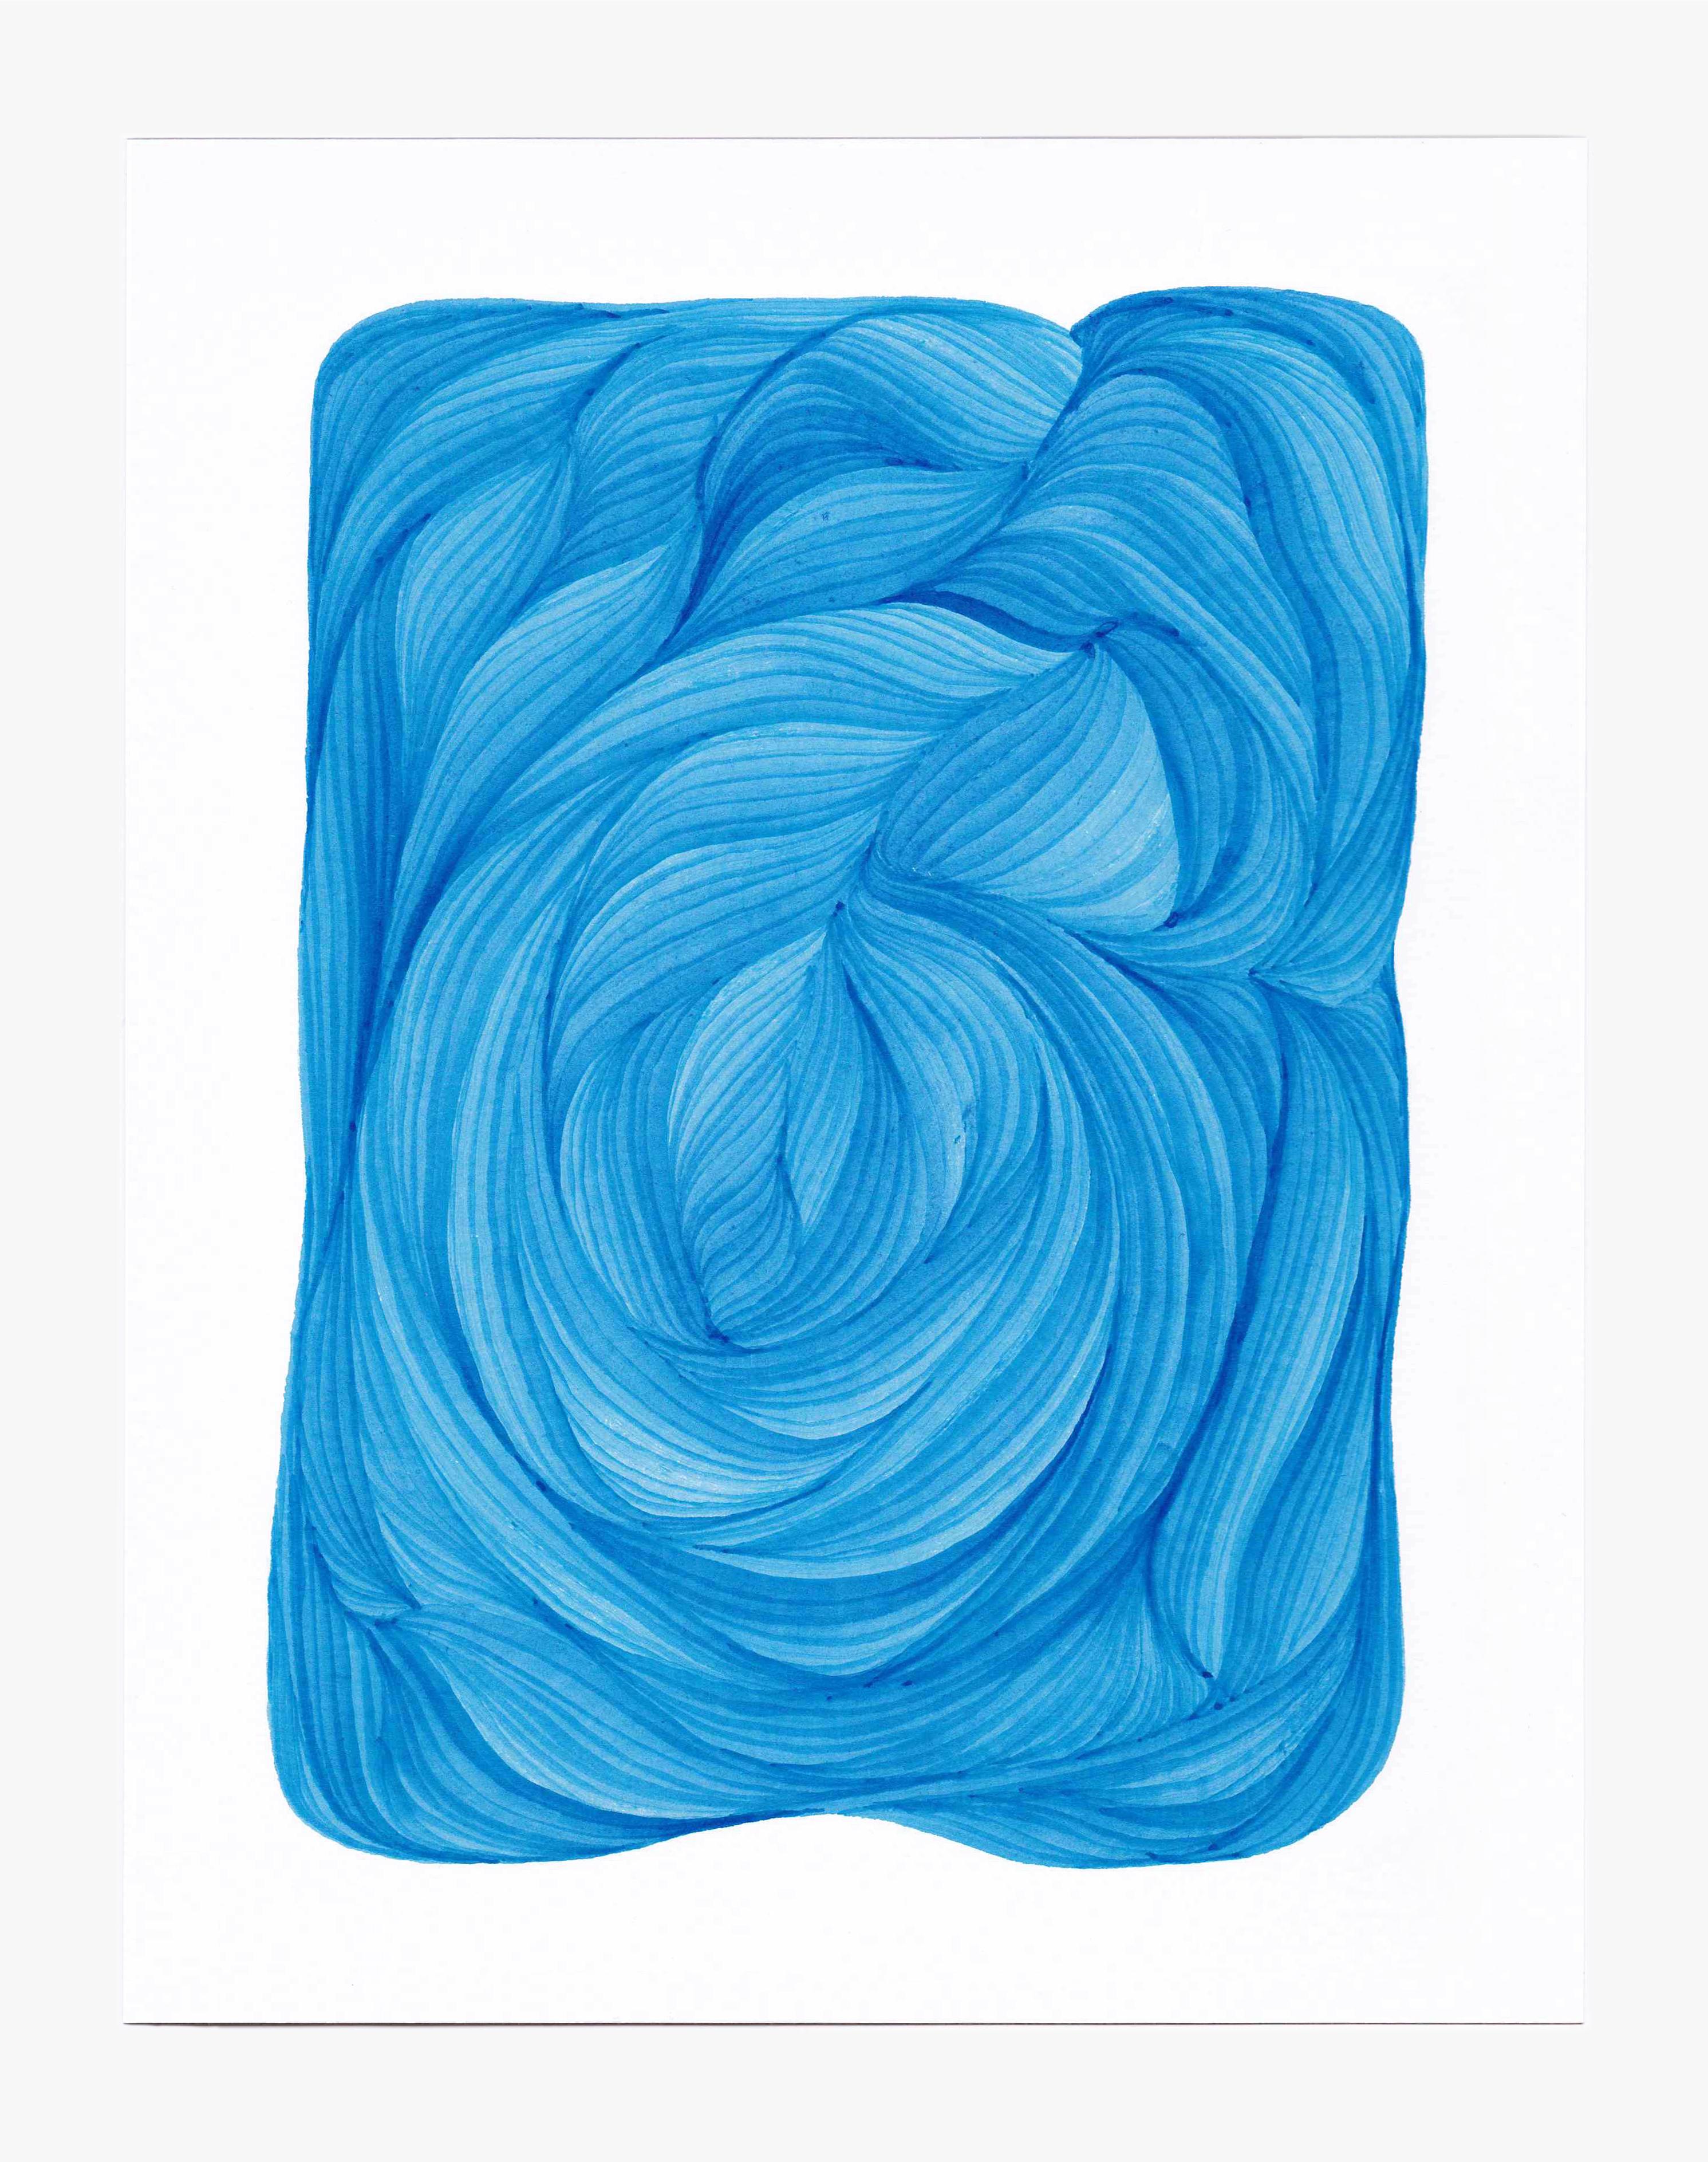 Linien 4 - Abstrakte geometrische leuchtend blaue Tuschezeichnung auf Papier